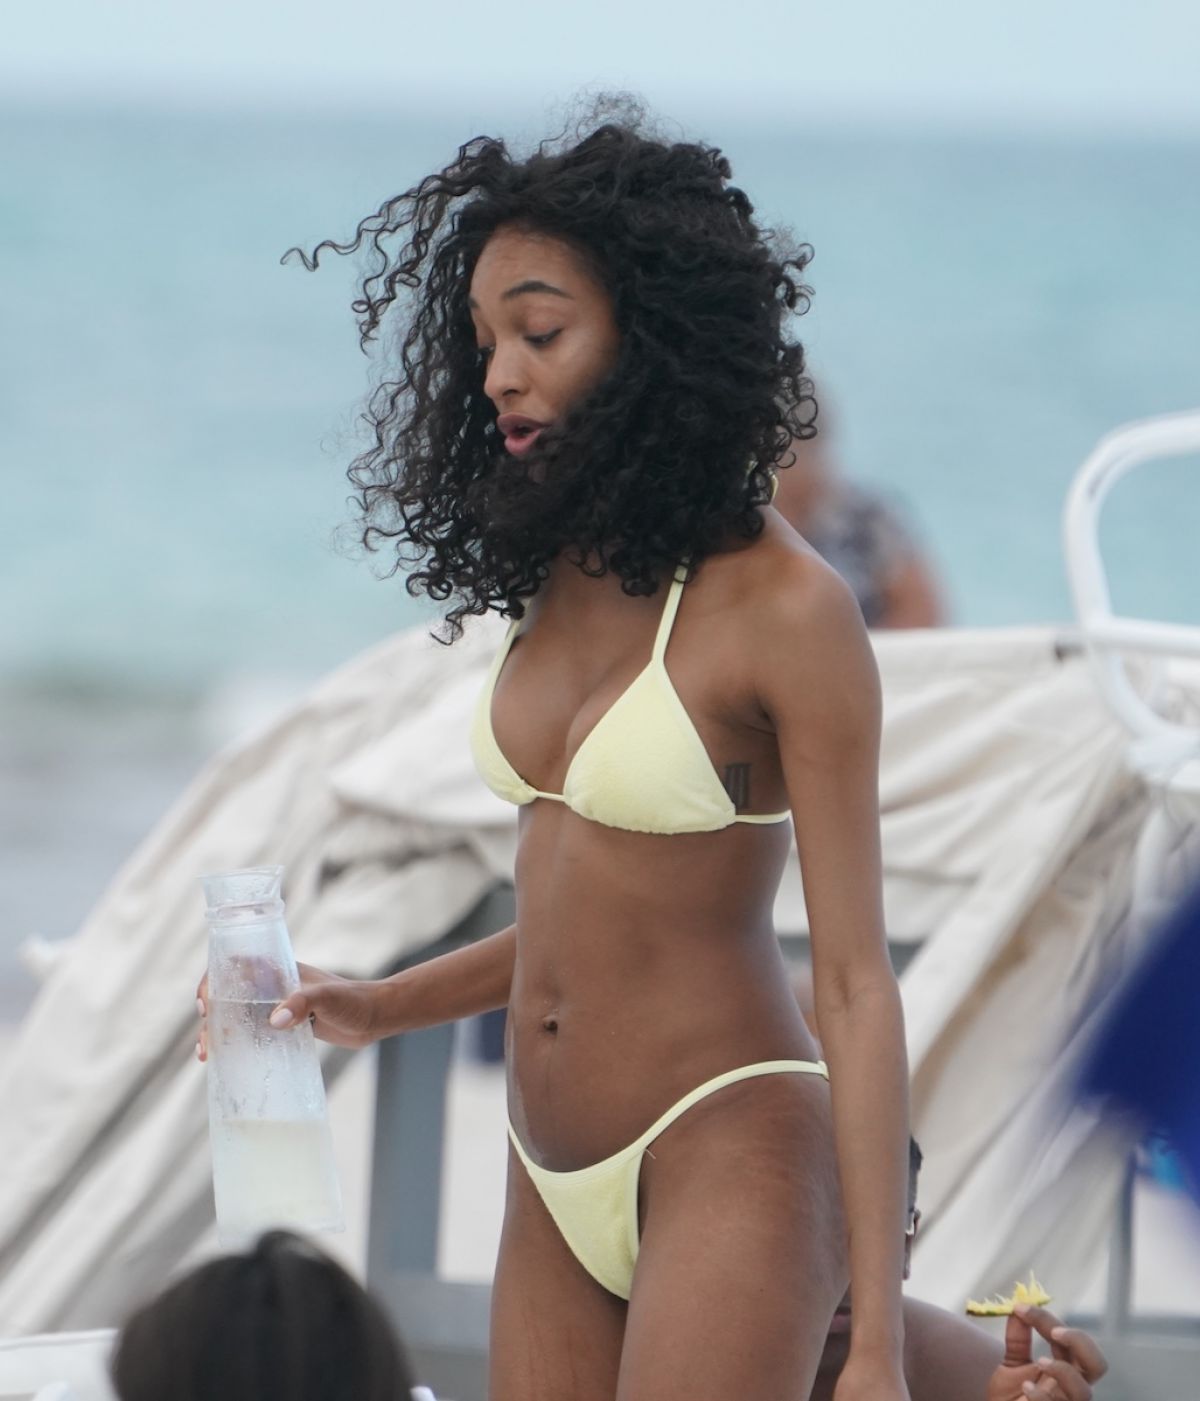 jourdan-dunn-in-bikini-at-a-beach-in-miami-05-12-2019-1.jpg